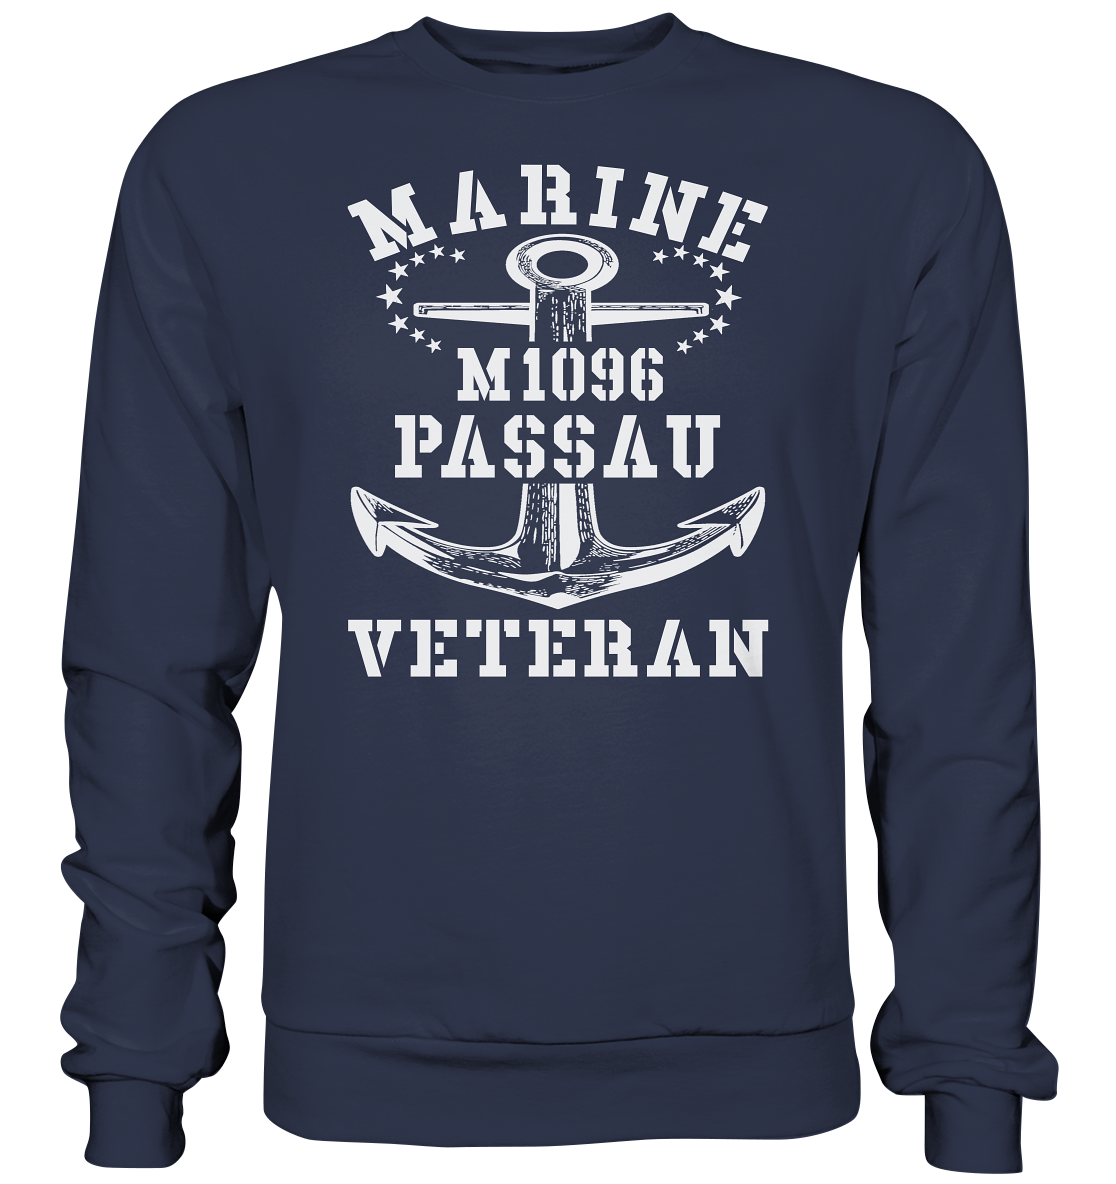 M1096 PASSAU Marine Veteran - Premium Sweatshirt